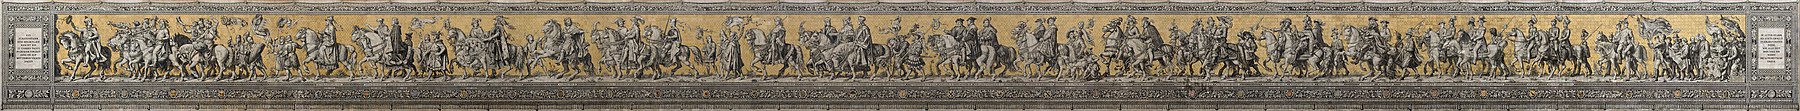 Triumfální průvod knížecího rodu Wettinů, porcelánová mozaika na zdi Dvorních koníren z 19. století.